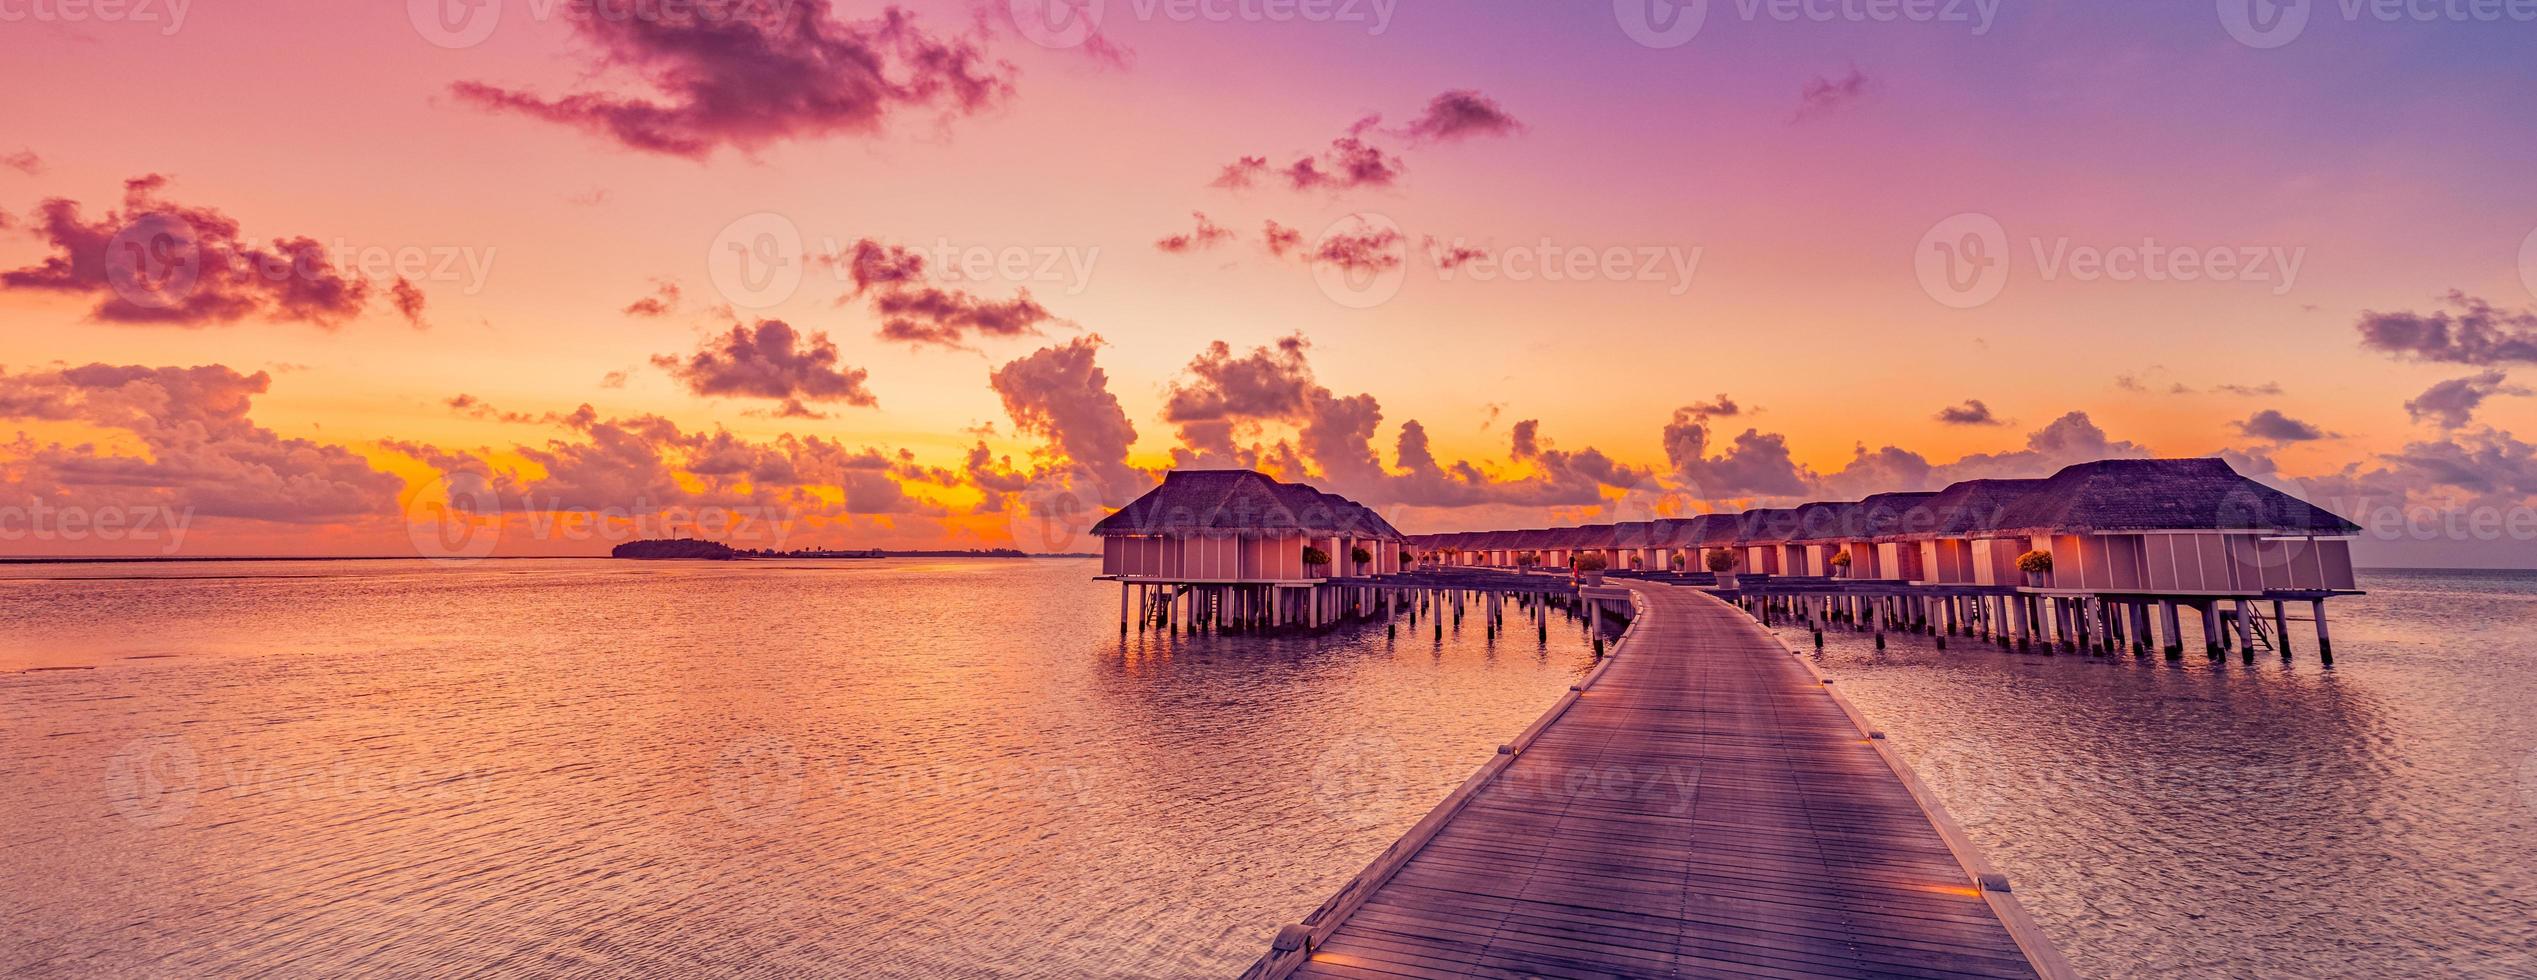 incrível panorama do pôr do sol tropical nas ilhas maldivas. Seascape de villas de resort de luxo com luzes led suaves, céu de sonho colorido. conceito fantástico de férias de verão, paisagem de férias nascer do sol horizonte do mar foto